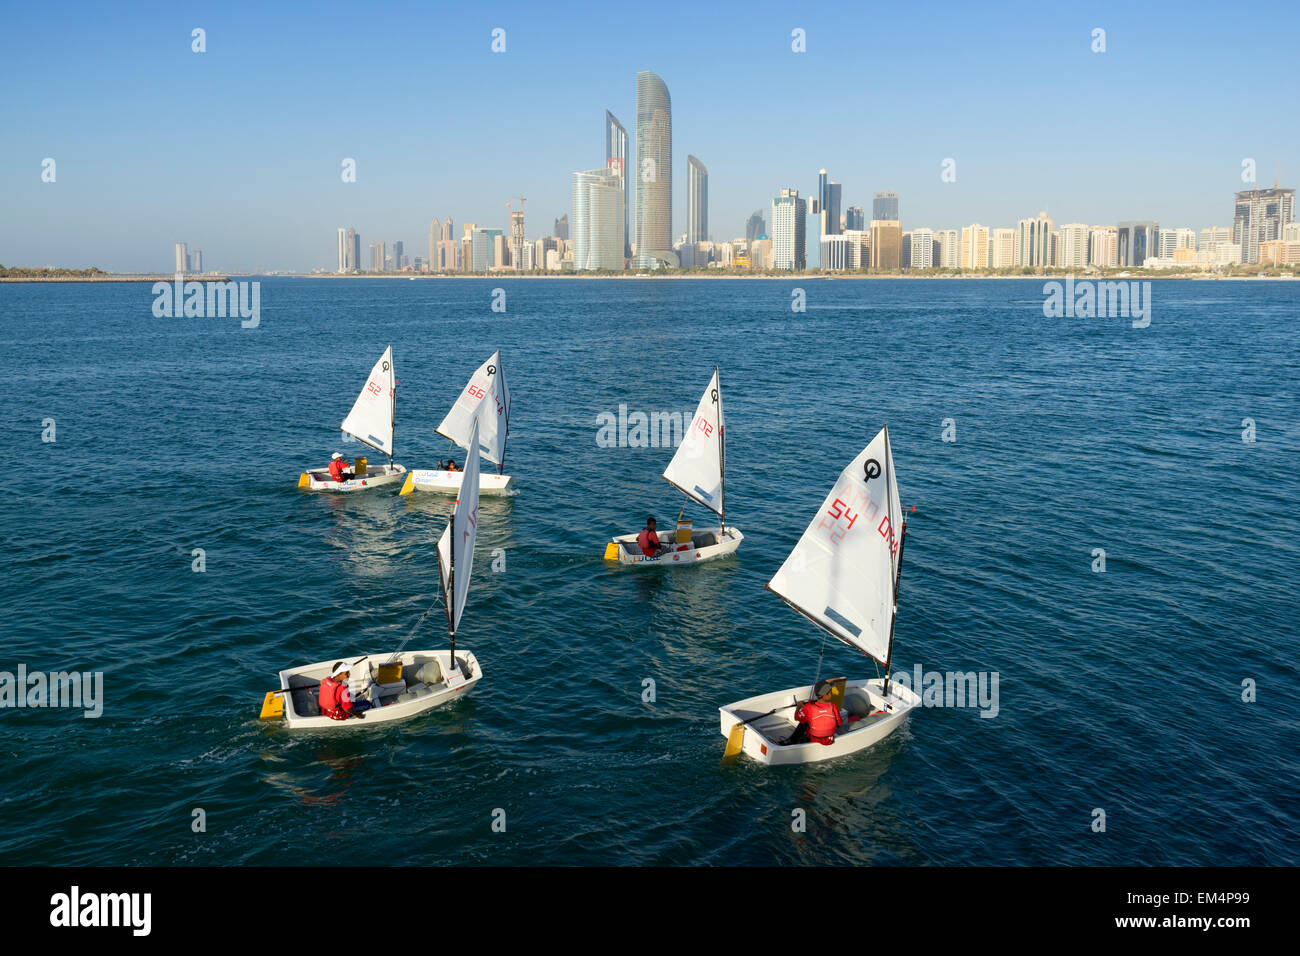 Vistas diurnas y veleros en Abu Dhabi, en Emiratos Arabes Unidos Foto de stock